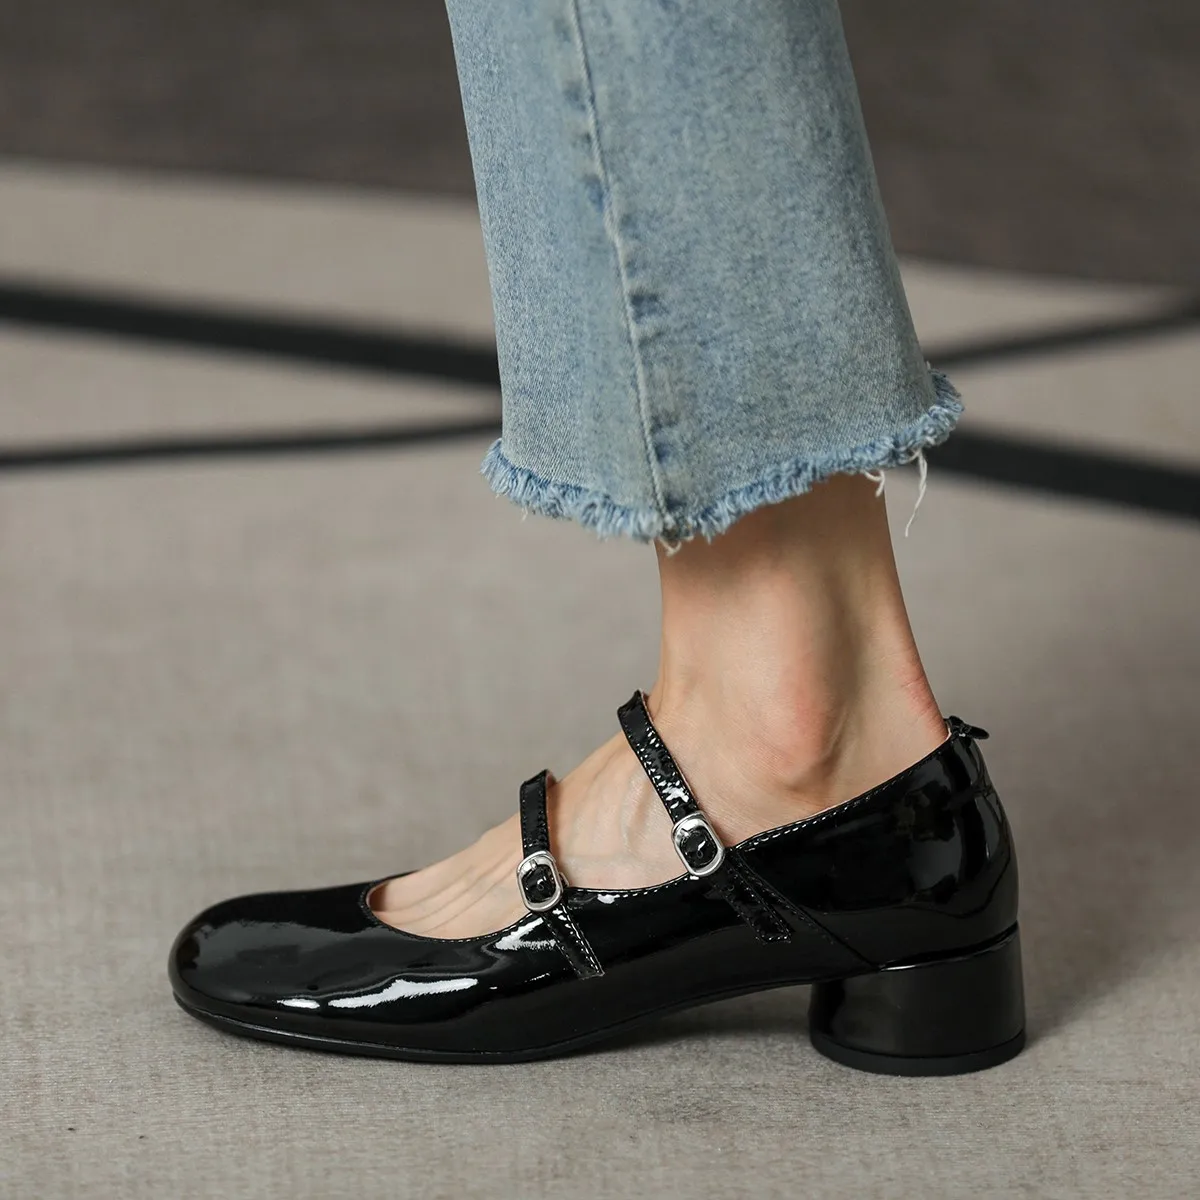 Kadın Pompaları Zarif Kadın Yuvarlak Ayak Ayakkabı SquareToe Bahar Sonbahar Patent Deri Pompaları Mary Jane Ayakkabı İki Sapanlar Med Topuk